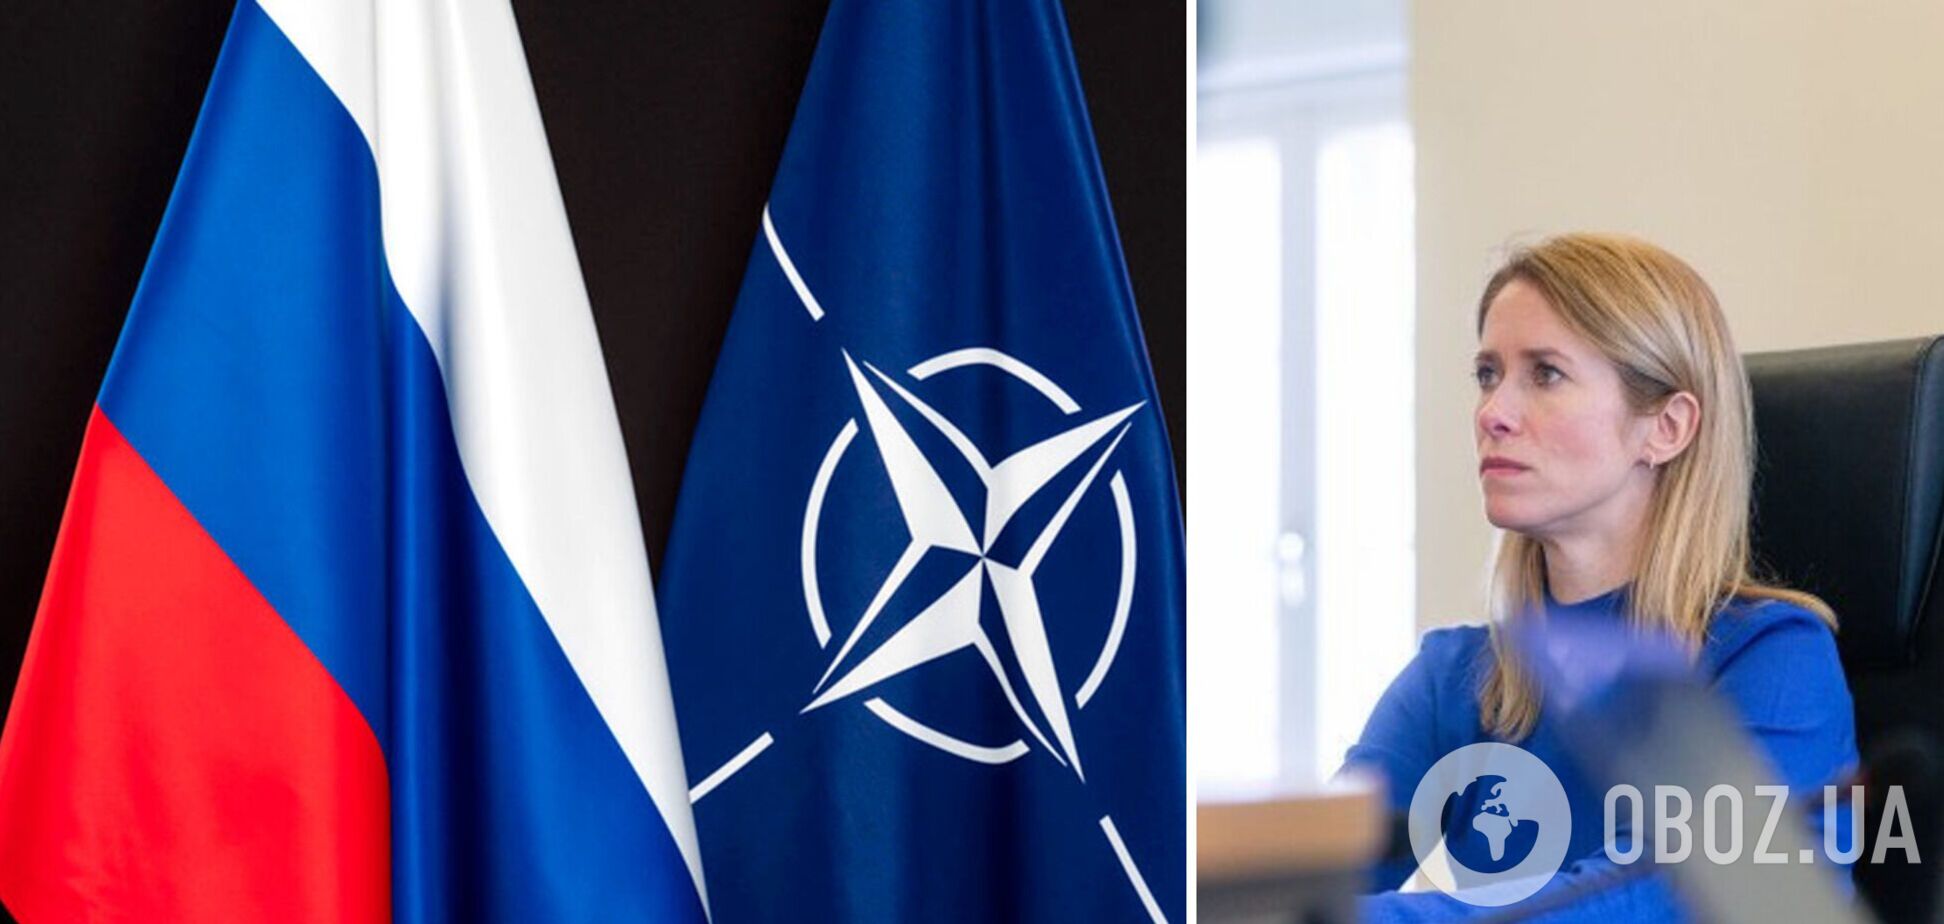 Премьер Эстонии о требованиях РФ по 'гарантиям безопасности': очень пугает то, что такие переговоры вообще идут